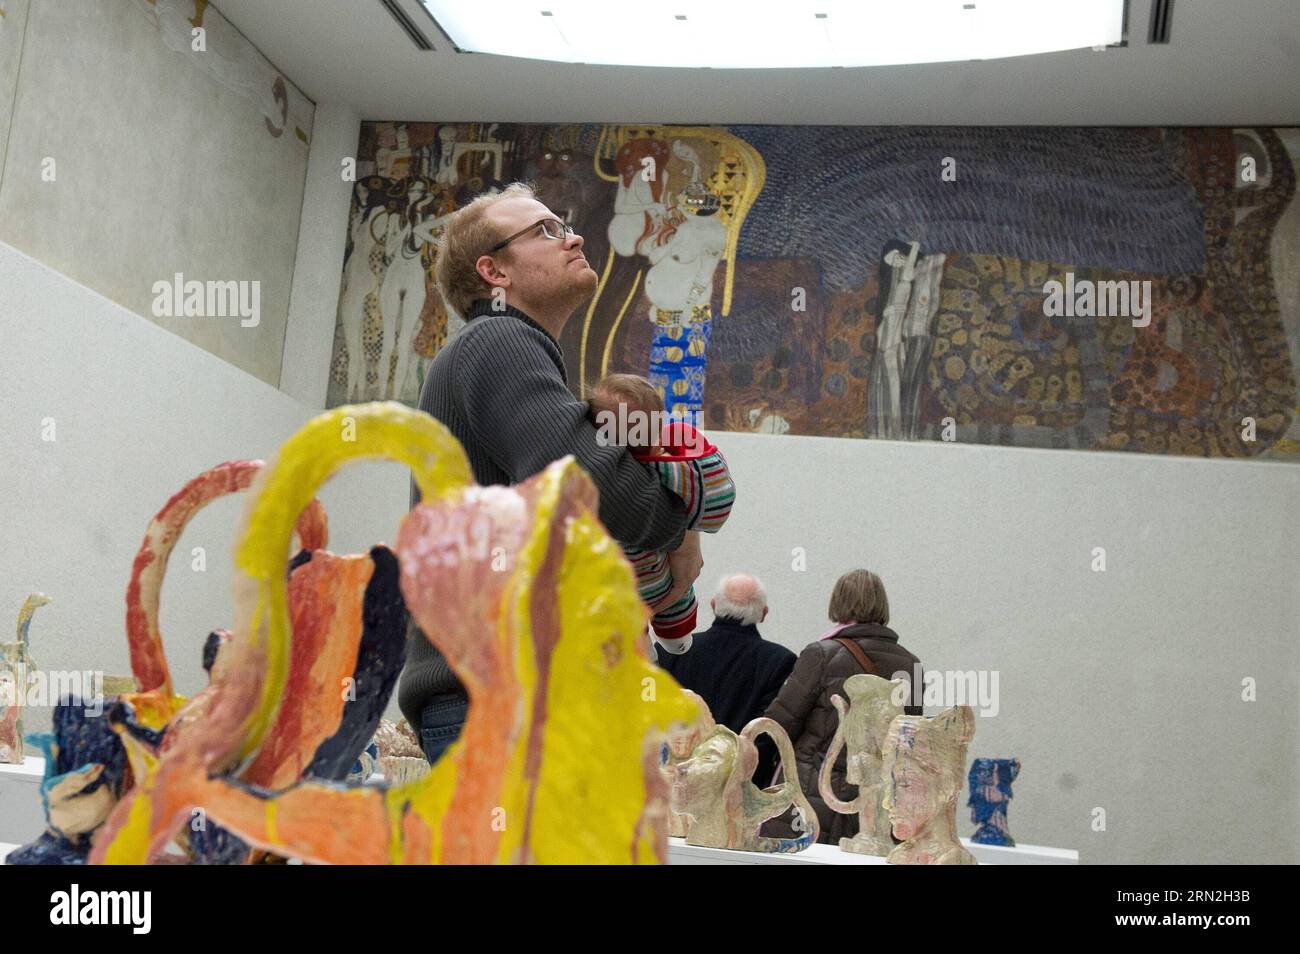 (150307) -- VIENNE, le 6 mars 2015 -- les visiteurs voient la Frise Beethoven dans le bâtiment de la Sécession de Vienne à Vienne, Autriche, le 6 mars 2015. L une des œuvres d art les plus précieuses d Autriche, Beethoven Frieze de Gustav Klimt, semble susceptible de rester dans le pays pour le moment après qu un panel d experts a rejeté vendredi les demandes de restitution des descendants de ses anciens propriétaires juifs. )(zhf) AUSTRIA-VIENNA-BEETHOVEN FRISE-RESTITUTION-AVOID QianxYi PUBLICATIONxNOTxINxCHN Vienne Mars 6 2015 visiteurs Voir la Frise Beethoven AU bâtiment de la Sécession de Vienne Autriche Mars 6 2015 l'un des plus précieux d'Autriche Banque D'Images